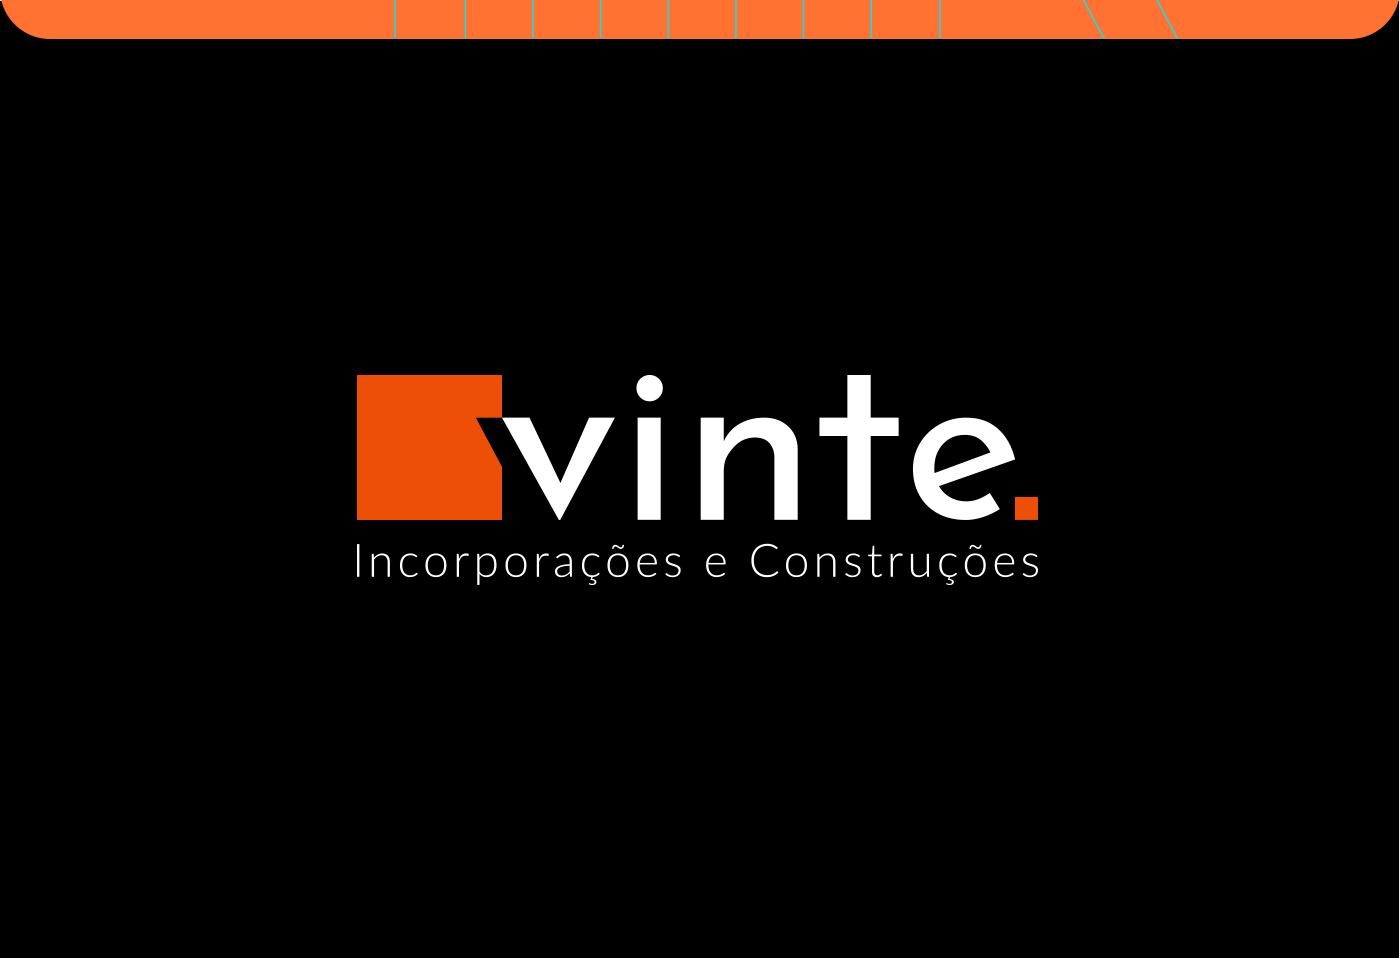 visual identity logos Logotipo Logo Design Engenharia contrução civil identidade visual construtora imobiliária